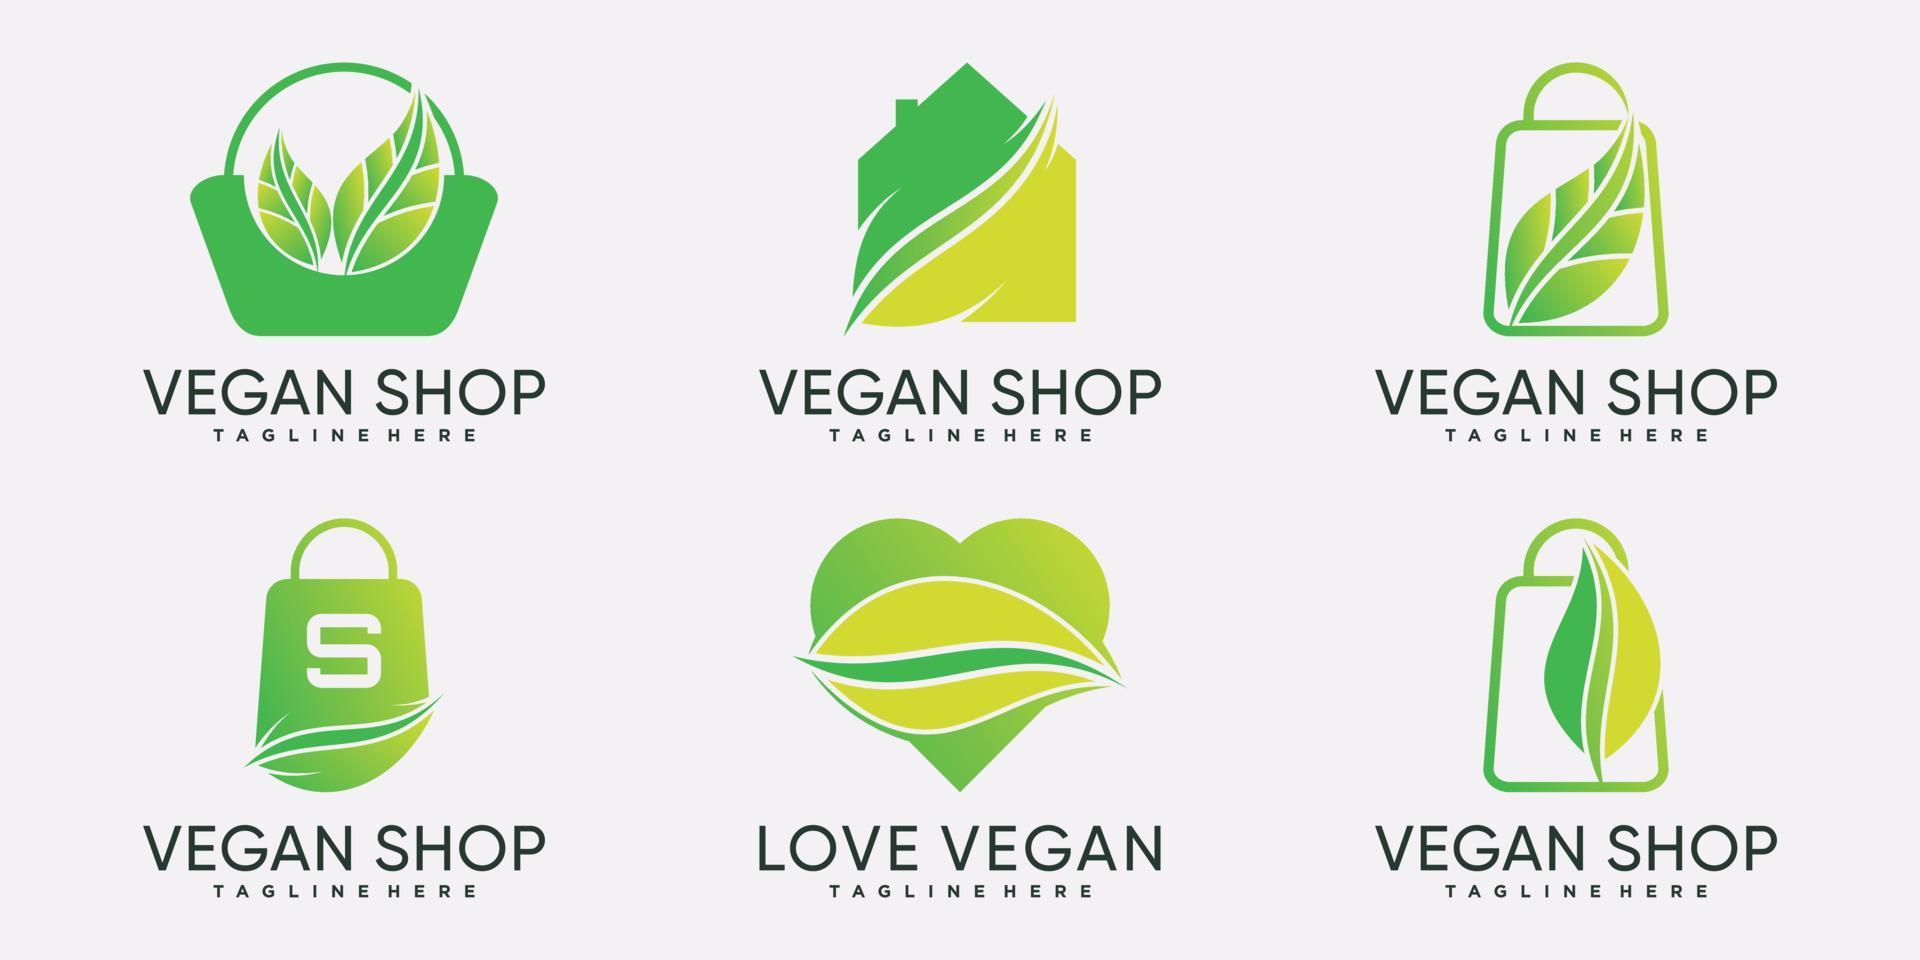 definir coleção de pacote de modelo de design de logotipo de loja vegana com vetor premium de elemento criativo